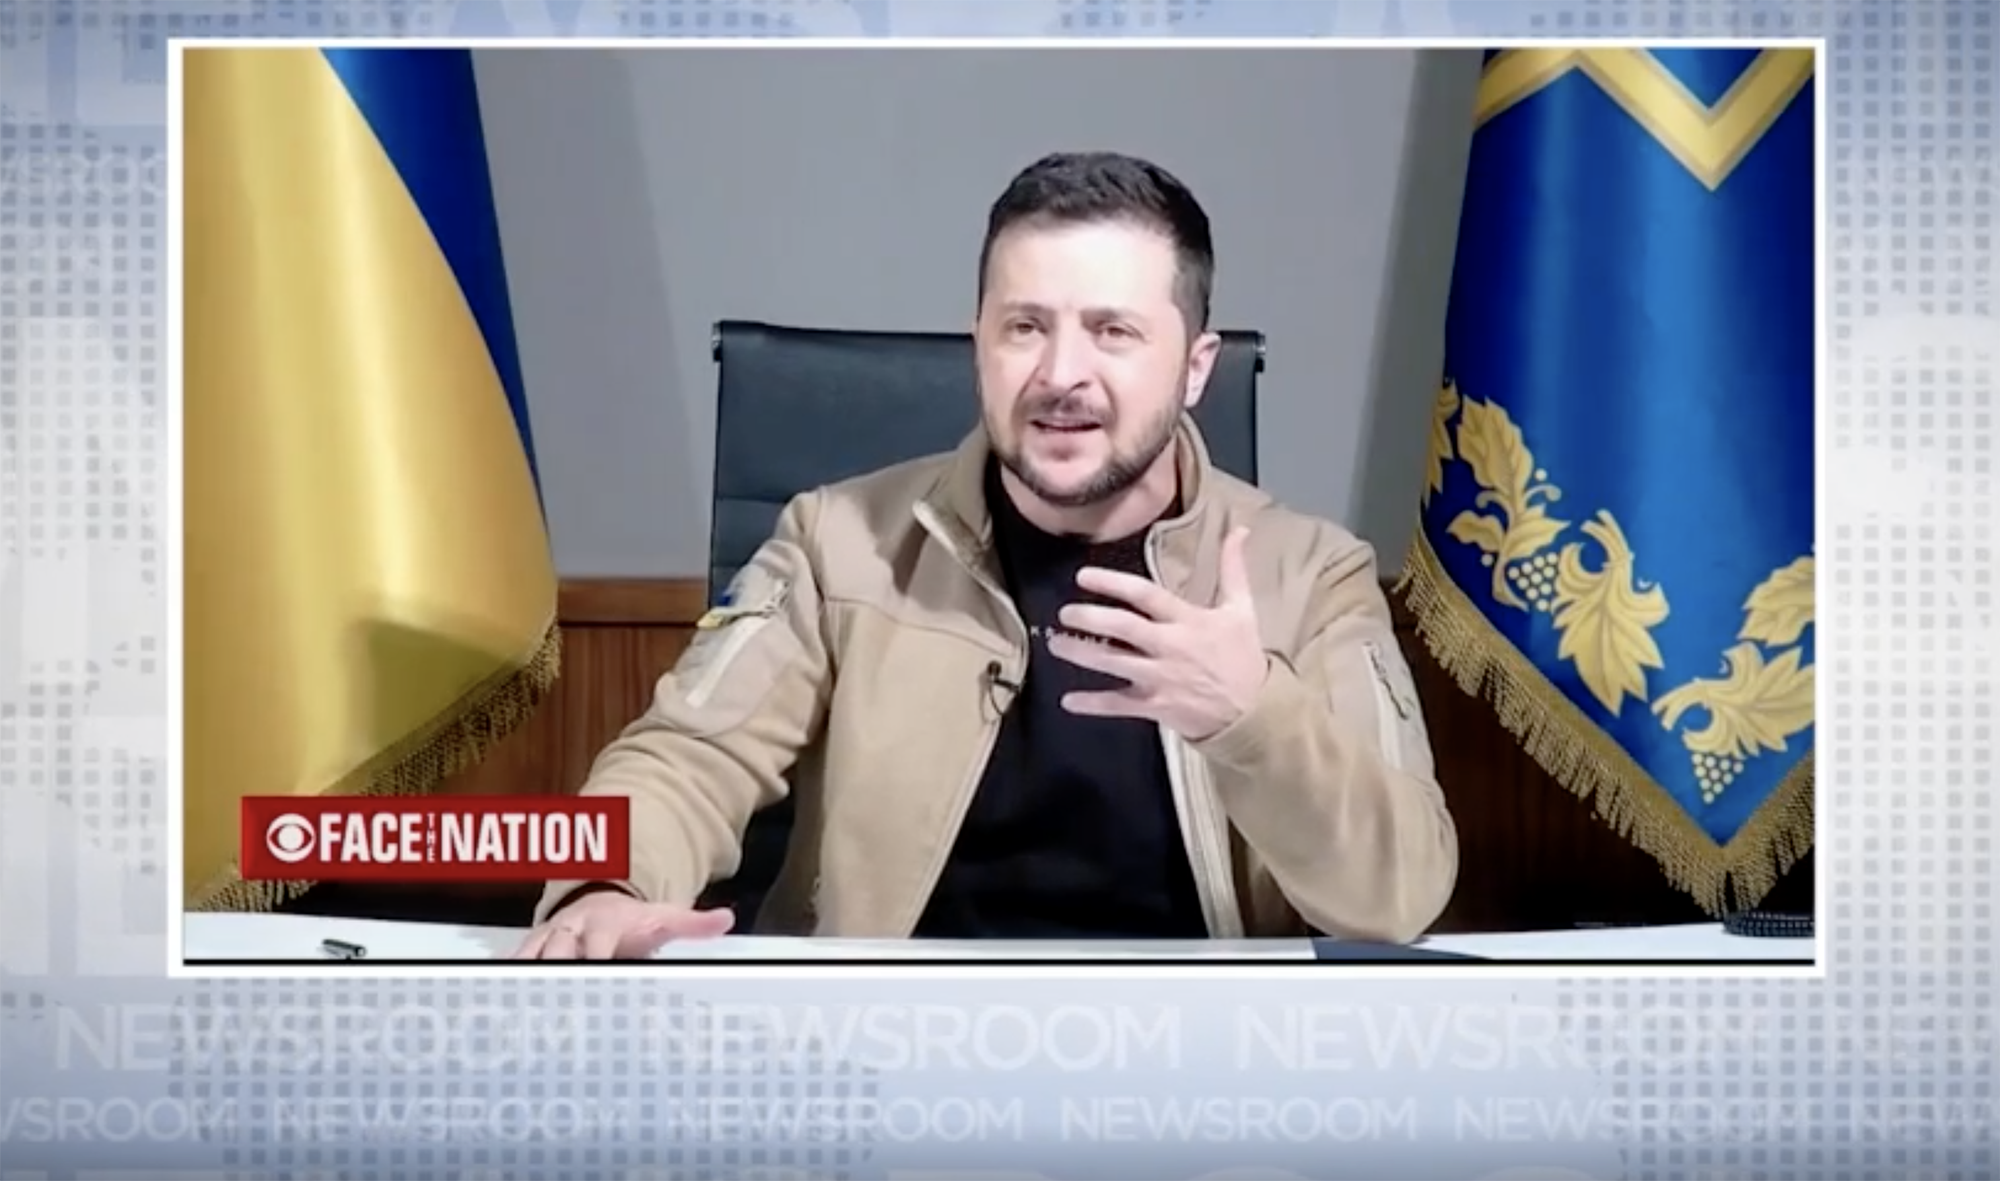 Ukrainian President Volodymyr Zelensky speaks to CBS in an interview aired on September 25.